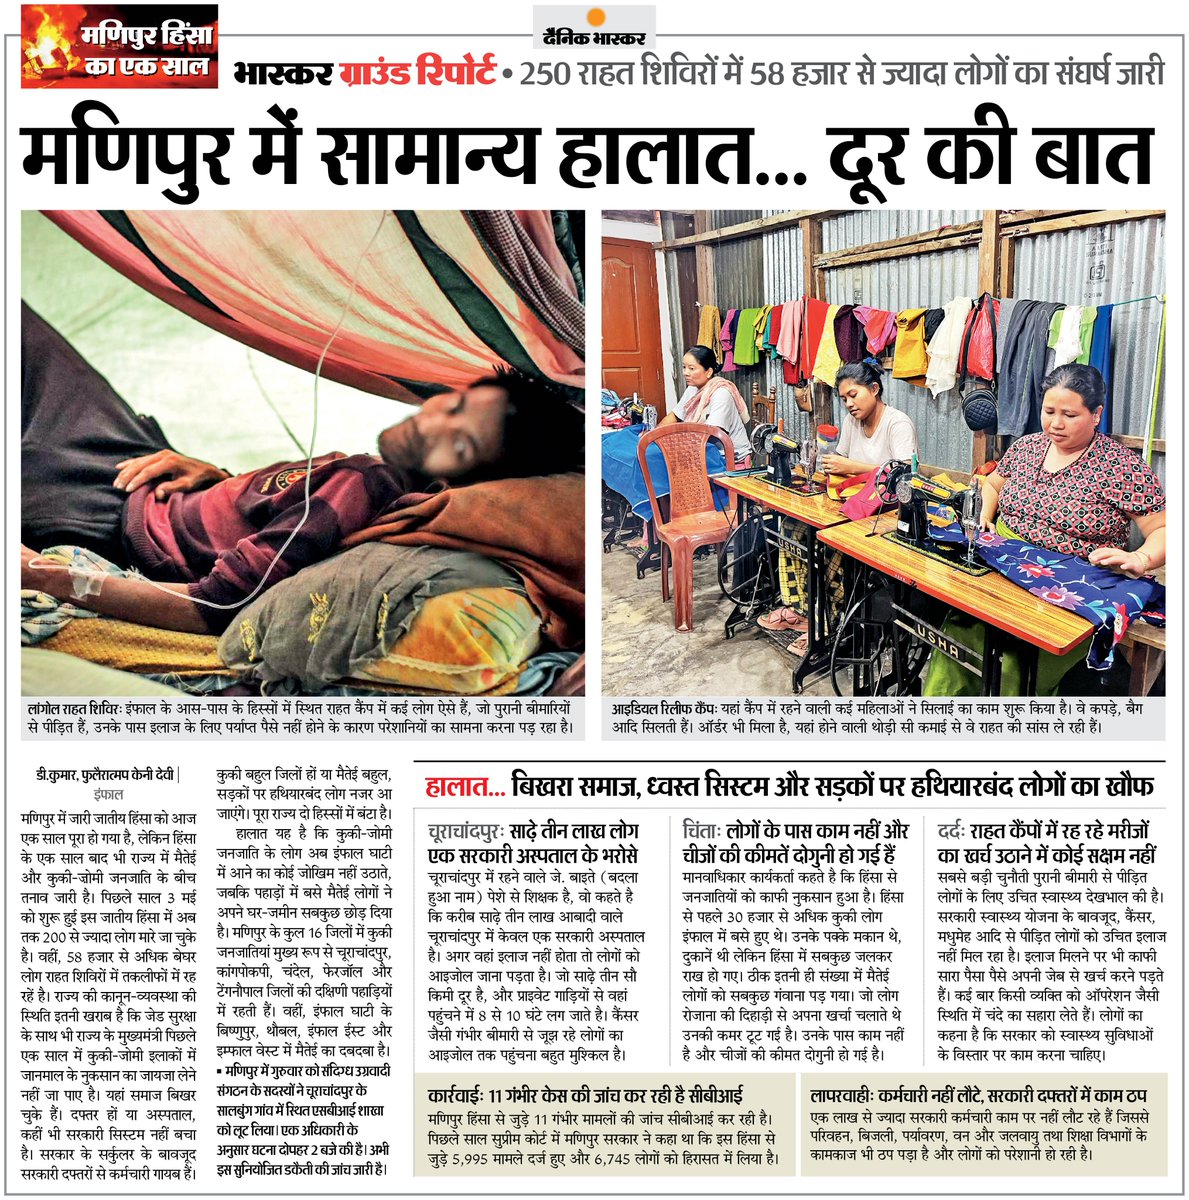 मणिपुर में हिंसा के एक साल बाद भी सामान्य हालात नहीं... बिखरा समाज, ध्वस्त सिस्टम और सड़कों पर हथियारबंद लोगों का खौफ अब भी जारी #Manipur अधिक खबरें और ई-पेपर पढ़ने के लिए दैनिक भास्कर ऐप इंस्टॉल करें - dainik-b.in/mjwzCSxDdsb